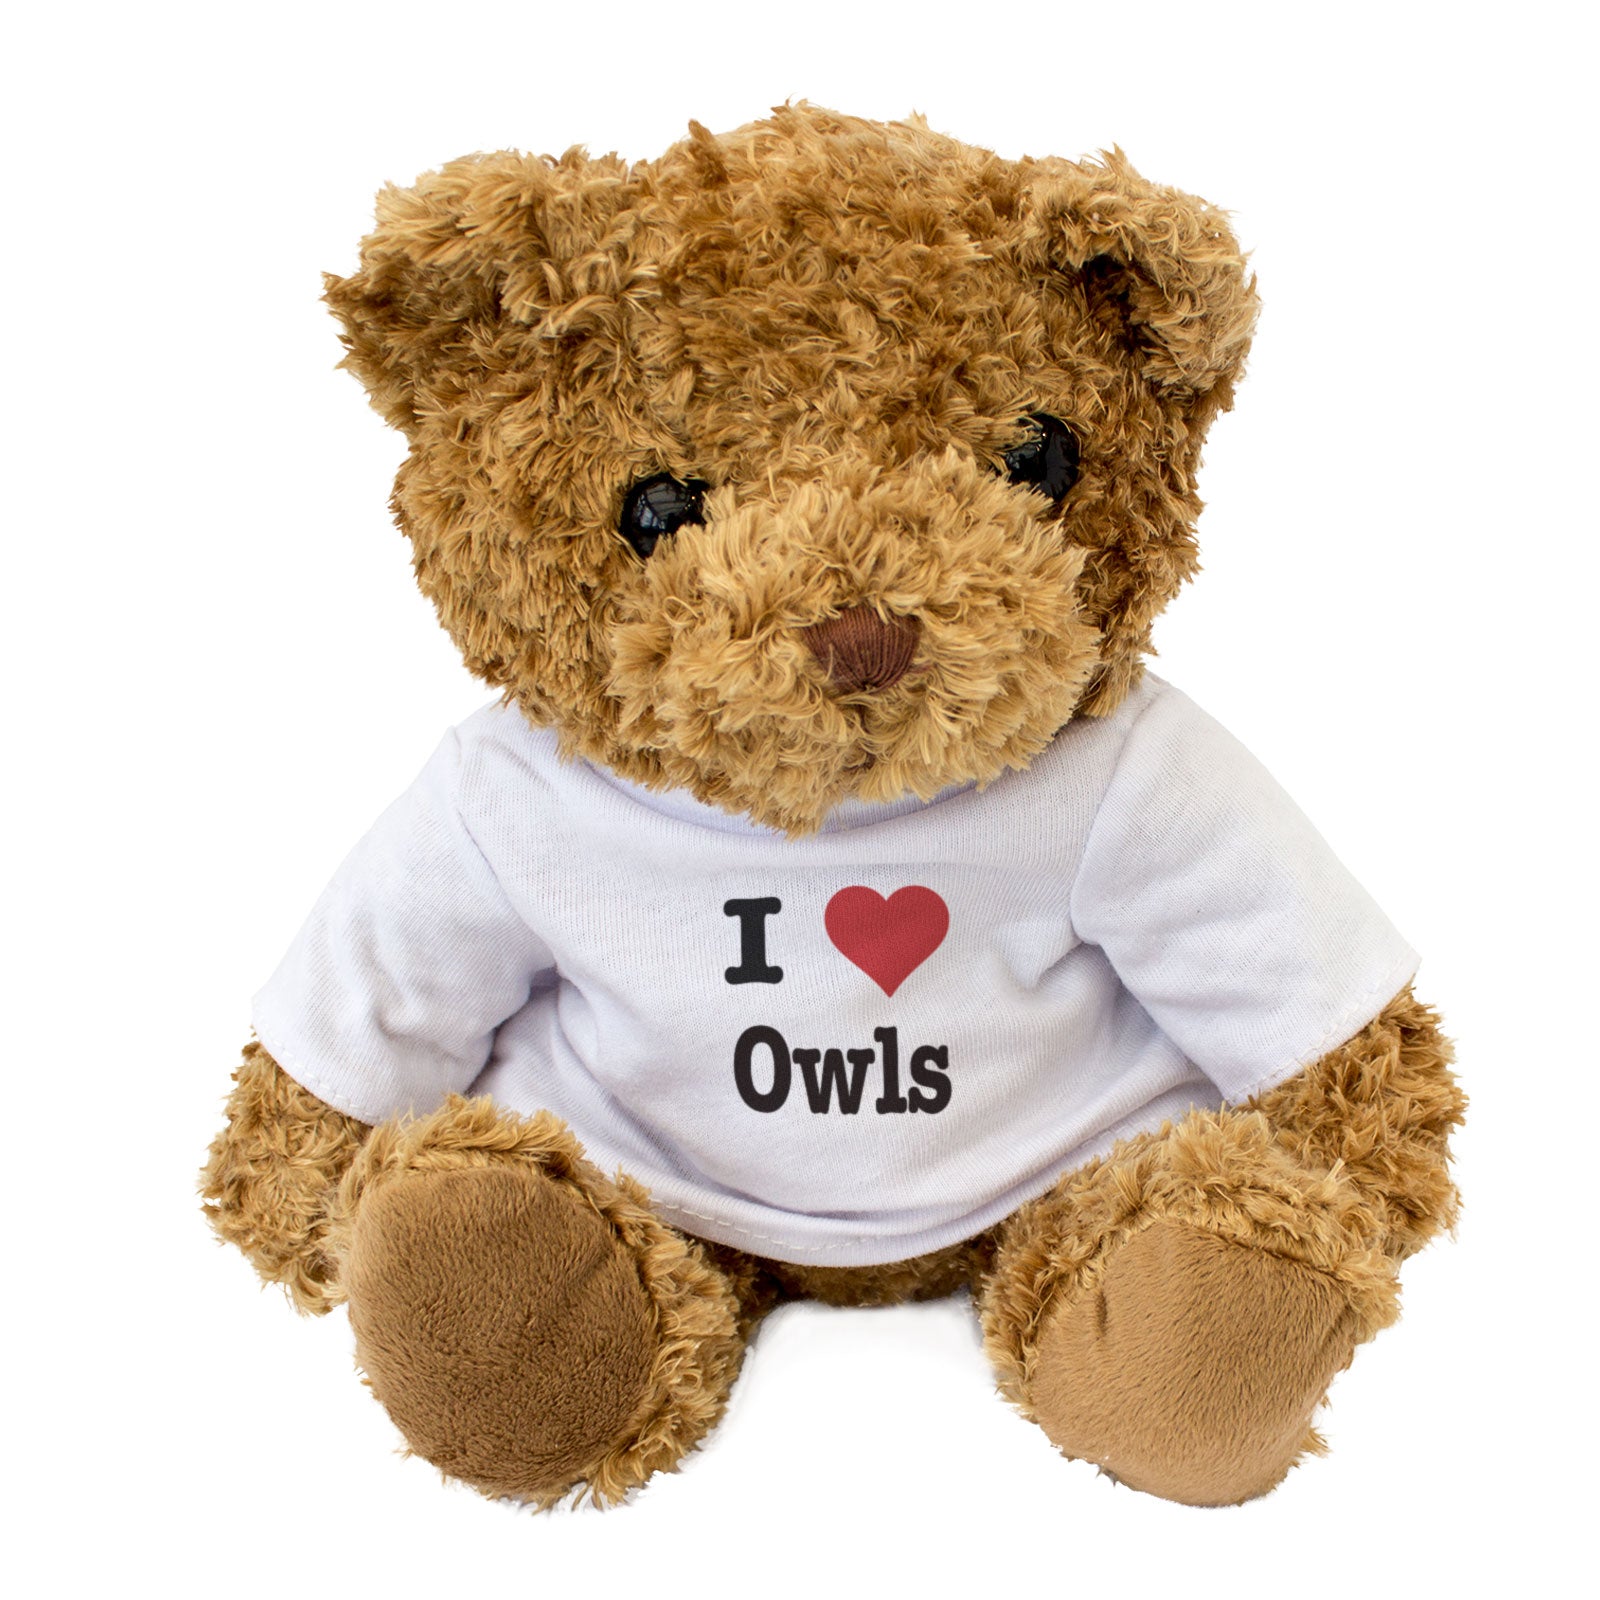 I Love Owls - Teddy Bear